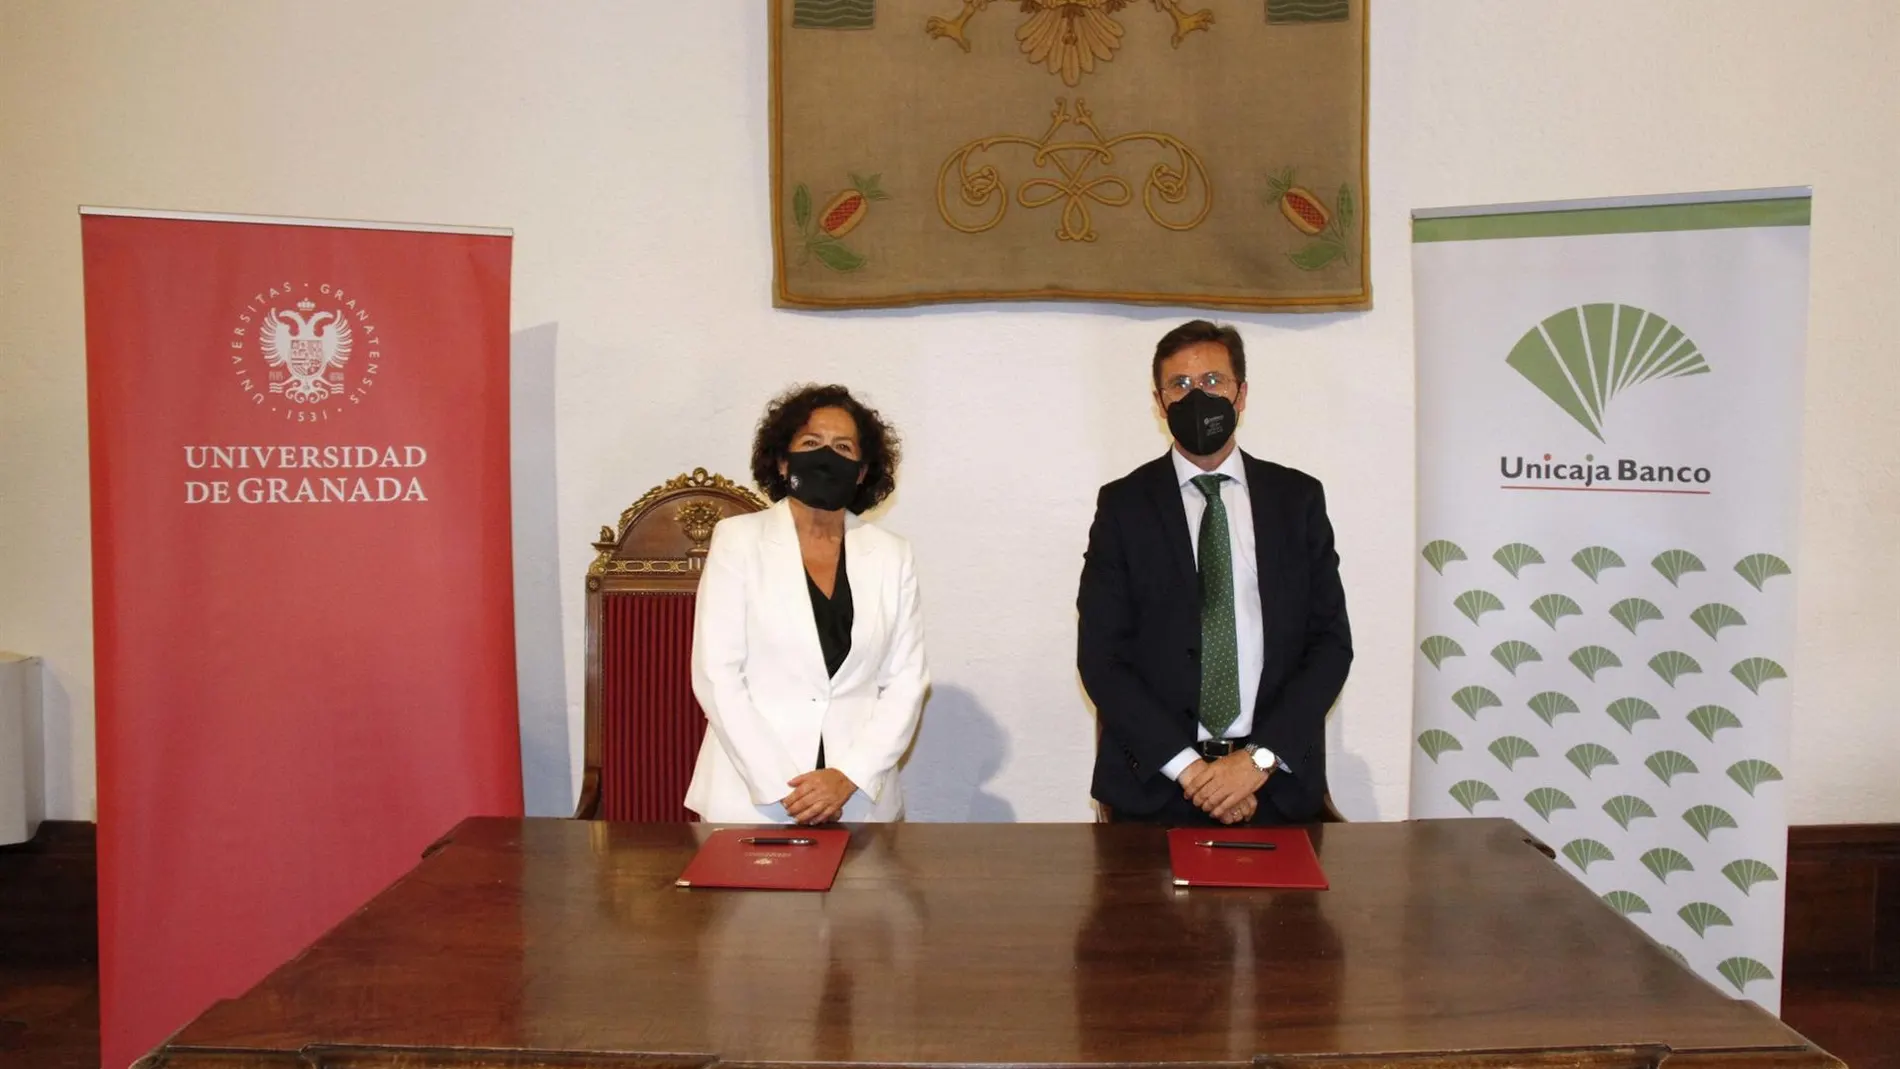 Acto de firma del convenio por el director de área de Granada de Unicaja Banco, Manuel Conde, y la rectora de la Universidad de Granada, Pilar Aranda